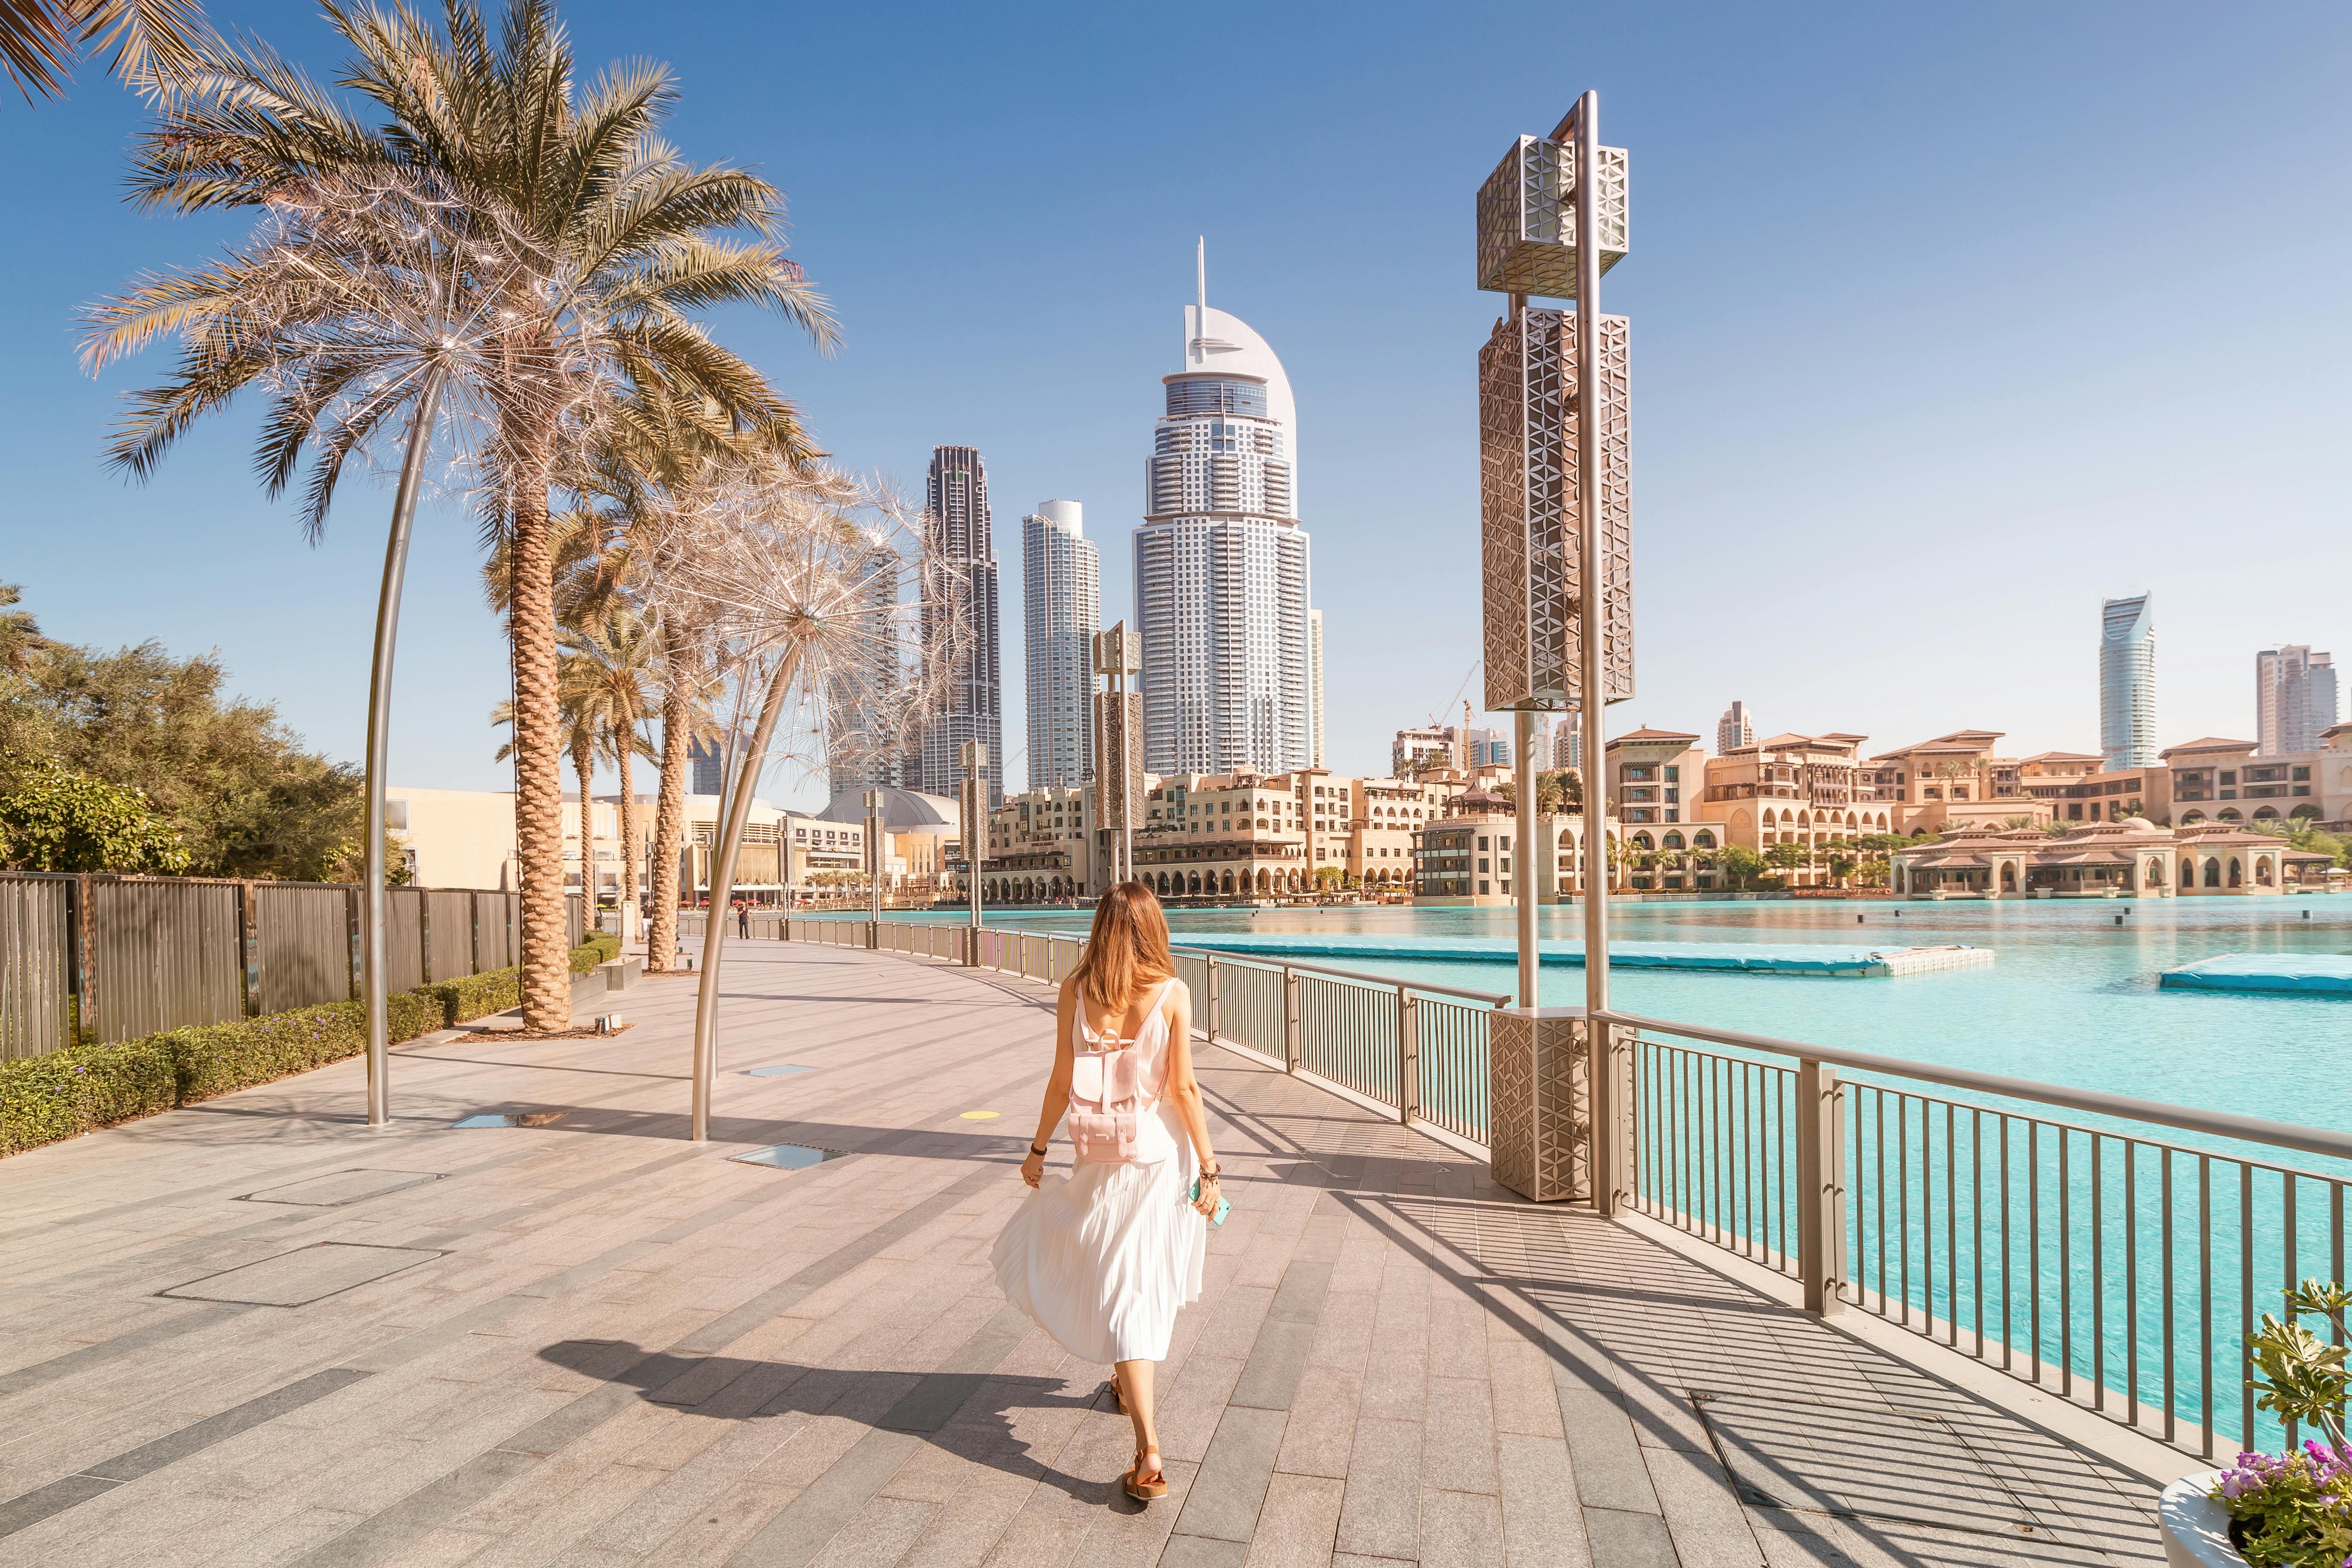 Louez un guide privé pour une journée à Dubaï